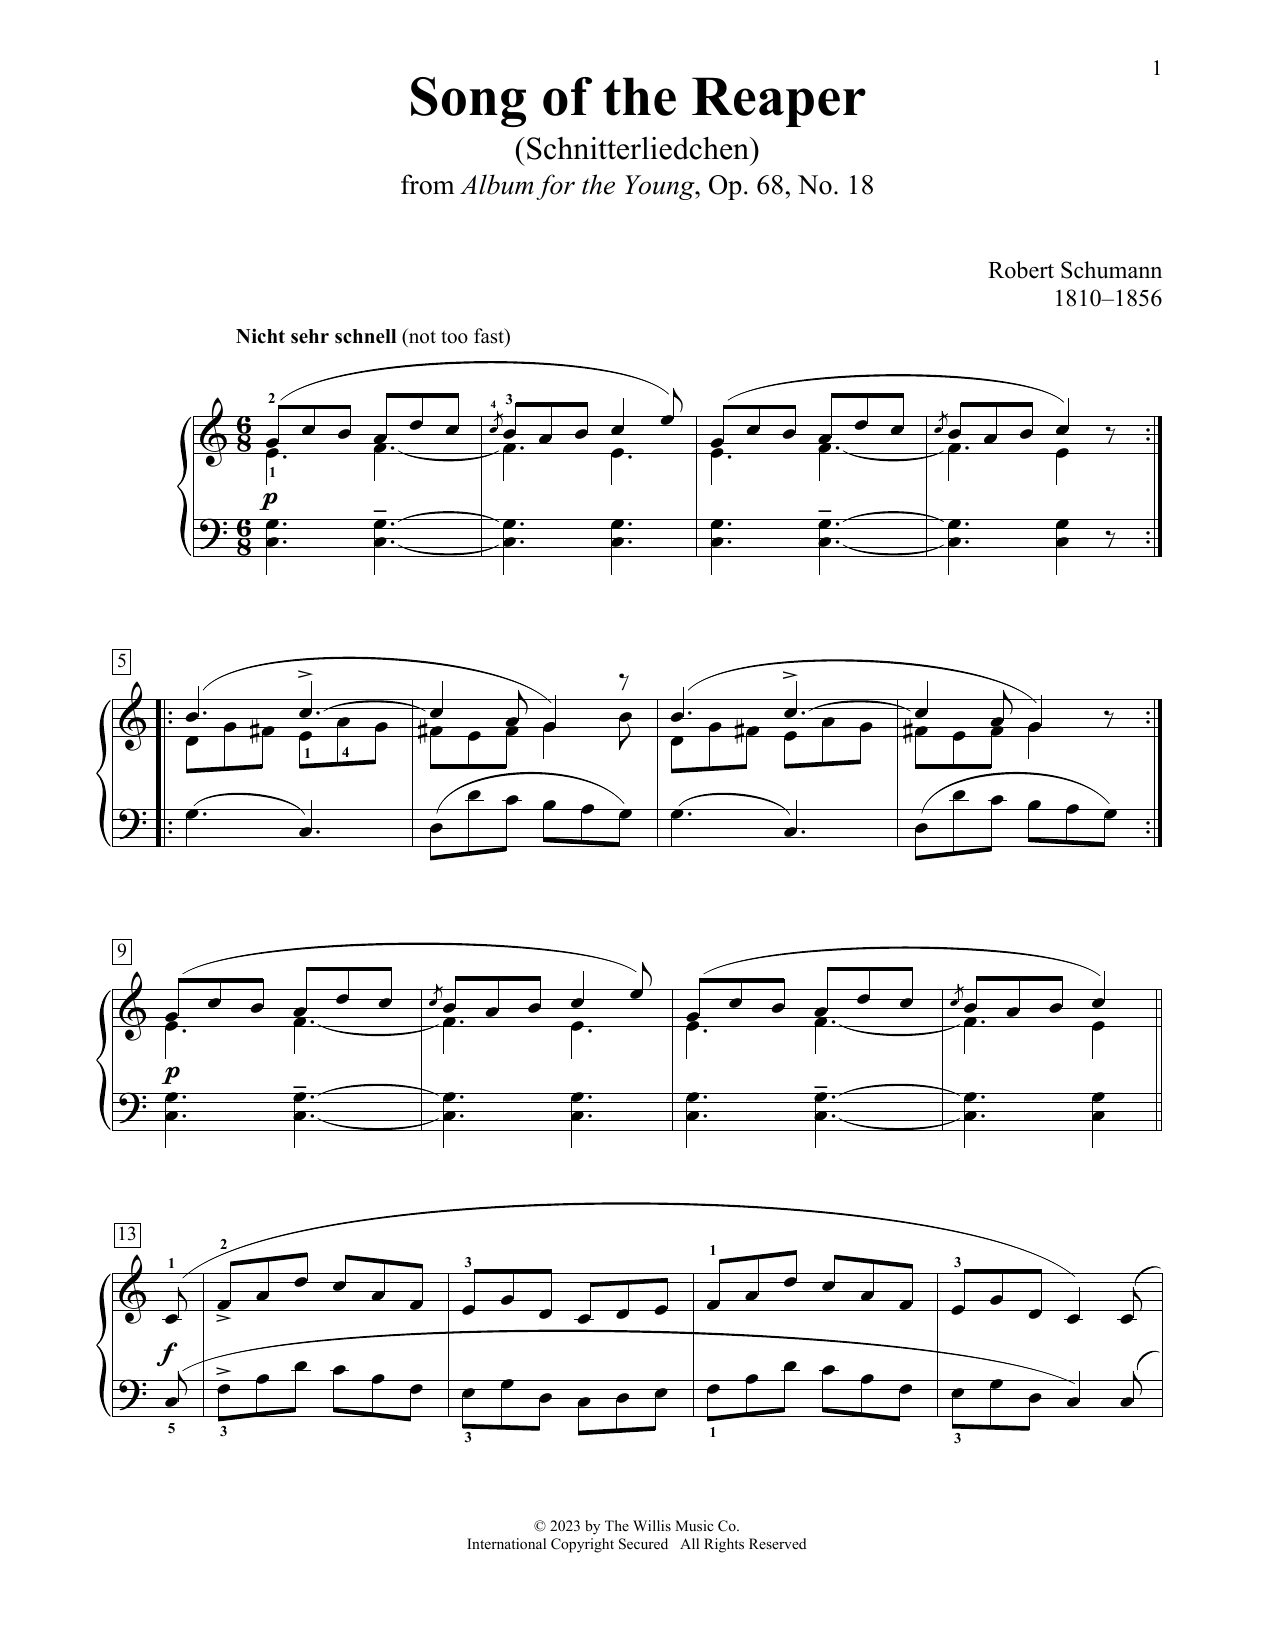 Robert Schumann Song Of The Reaper (Schnetterliedchen), Op. 68, No. 18 sheet music notes printable PDF score